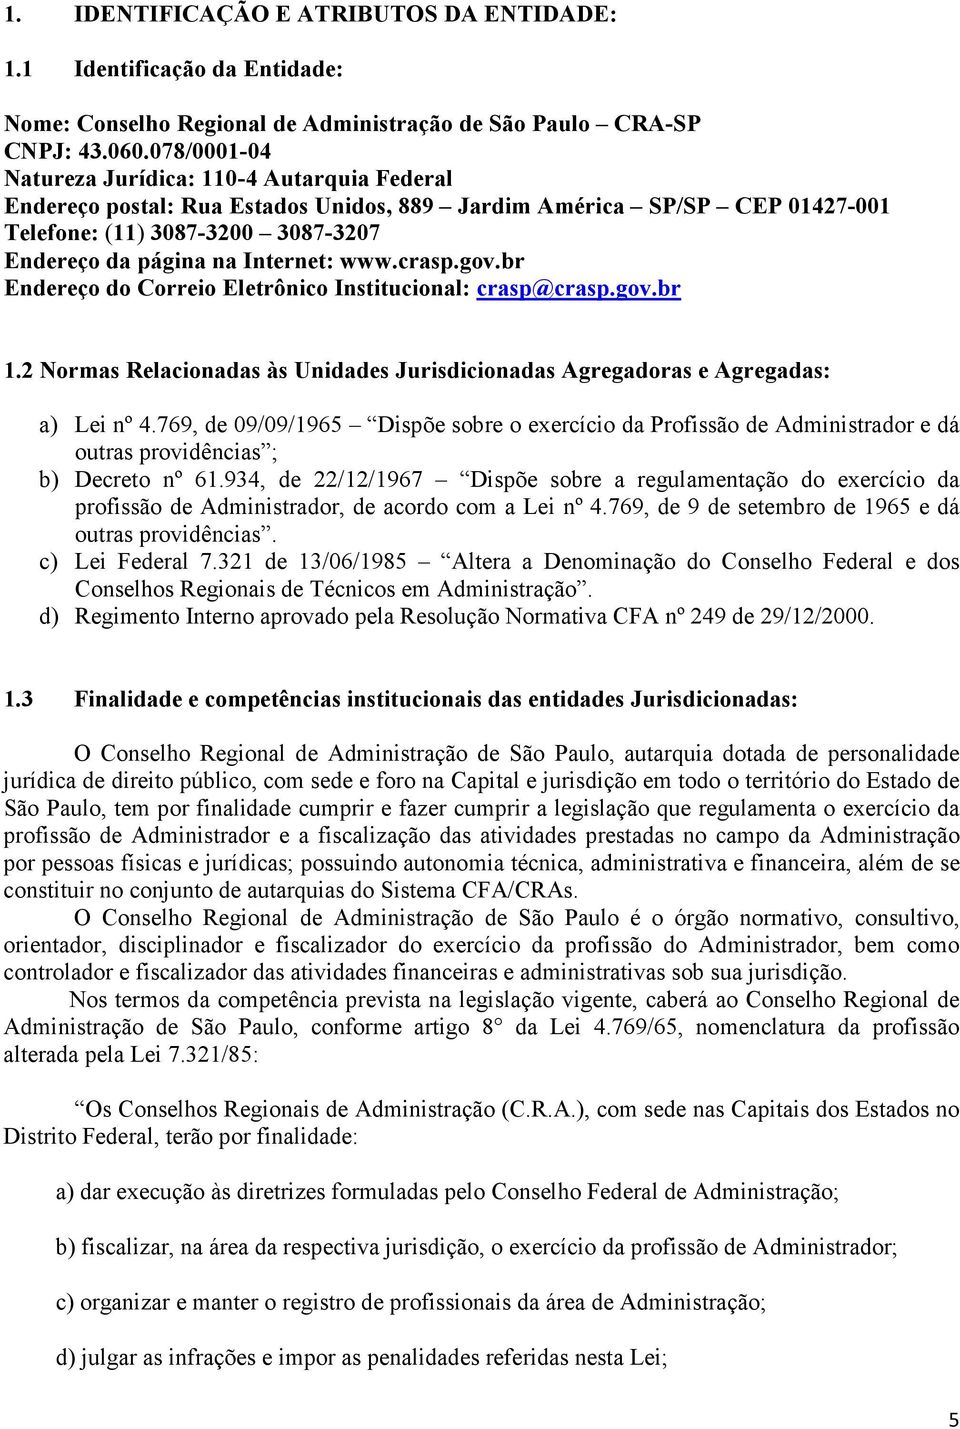 www.crasp.gov.br Endereço do Correio Eletrônico Institucional: crasp@crasp.gov.br 1.2 Normas Relacionadas às Unidades Jurisdicionadas Agregadoras e Agregadas: a) Lei nº 4.